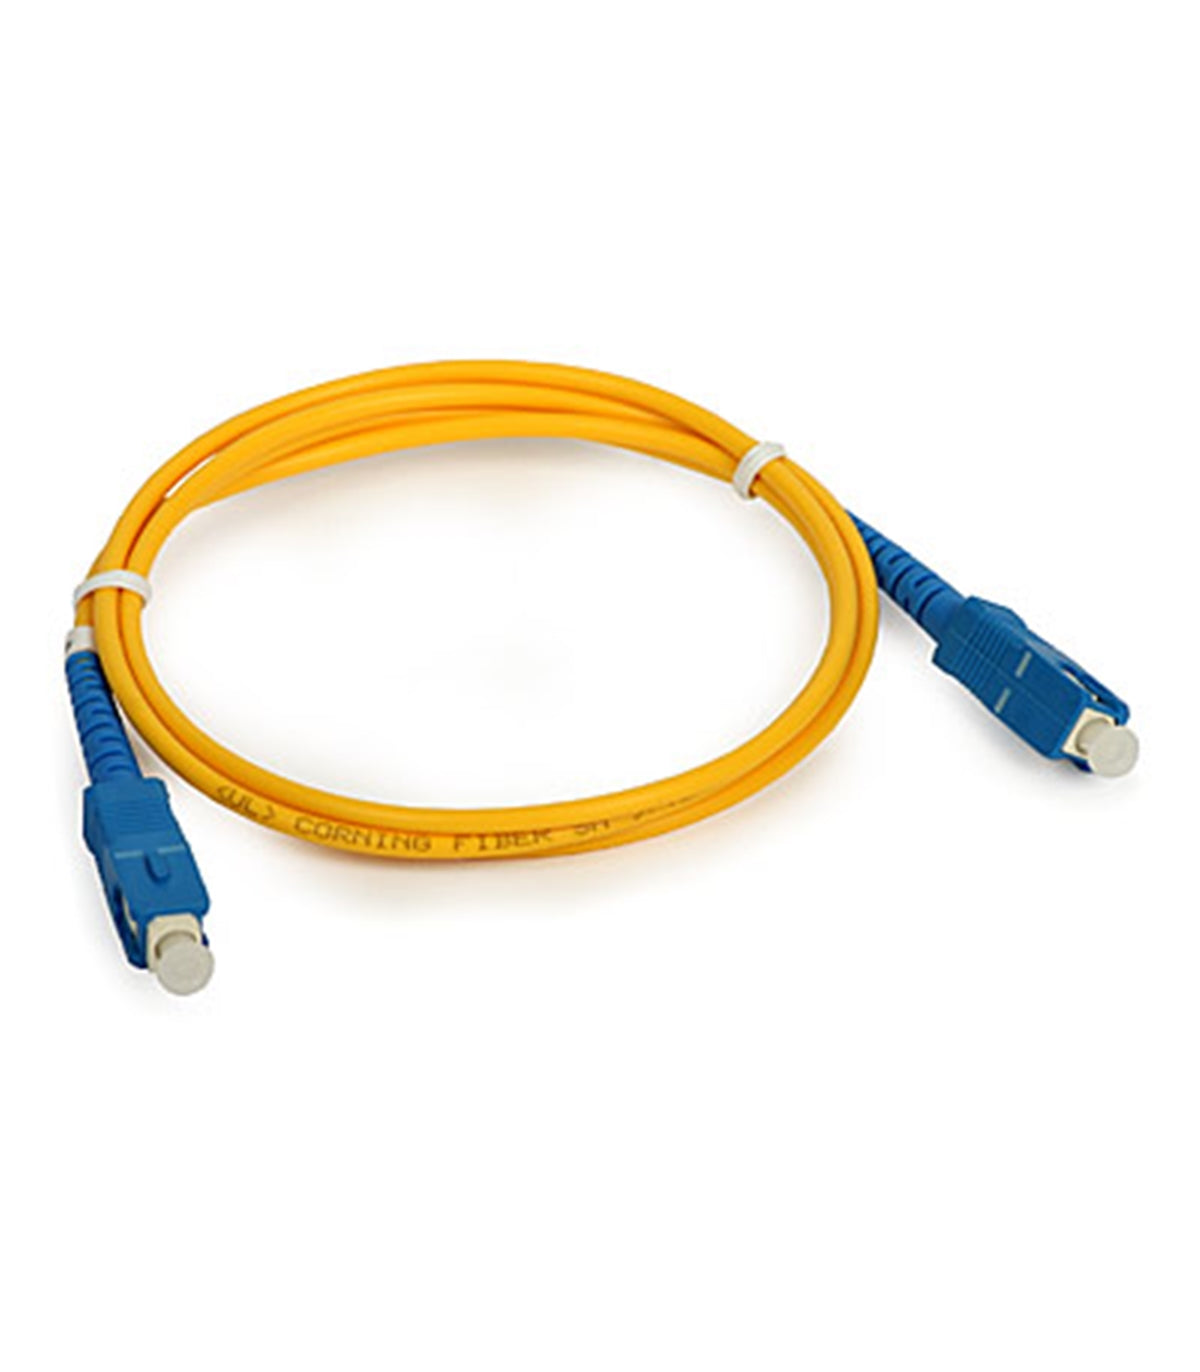 Net Link Sc to Sc Fiber Optic Patch Cord 20 Meter,Fiber Pigtal,Fiber media connector,fiber connector,fiber cable,